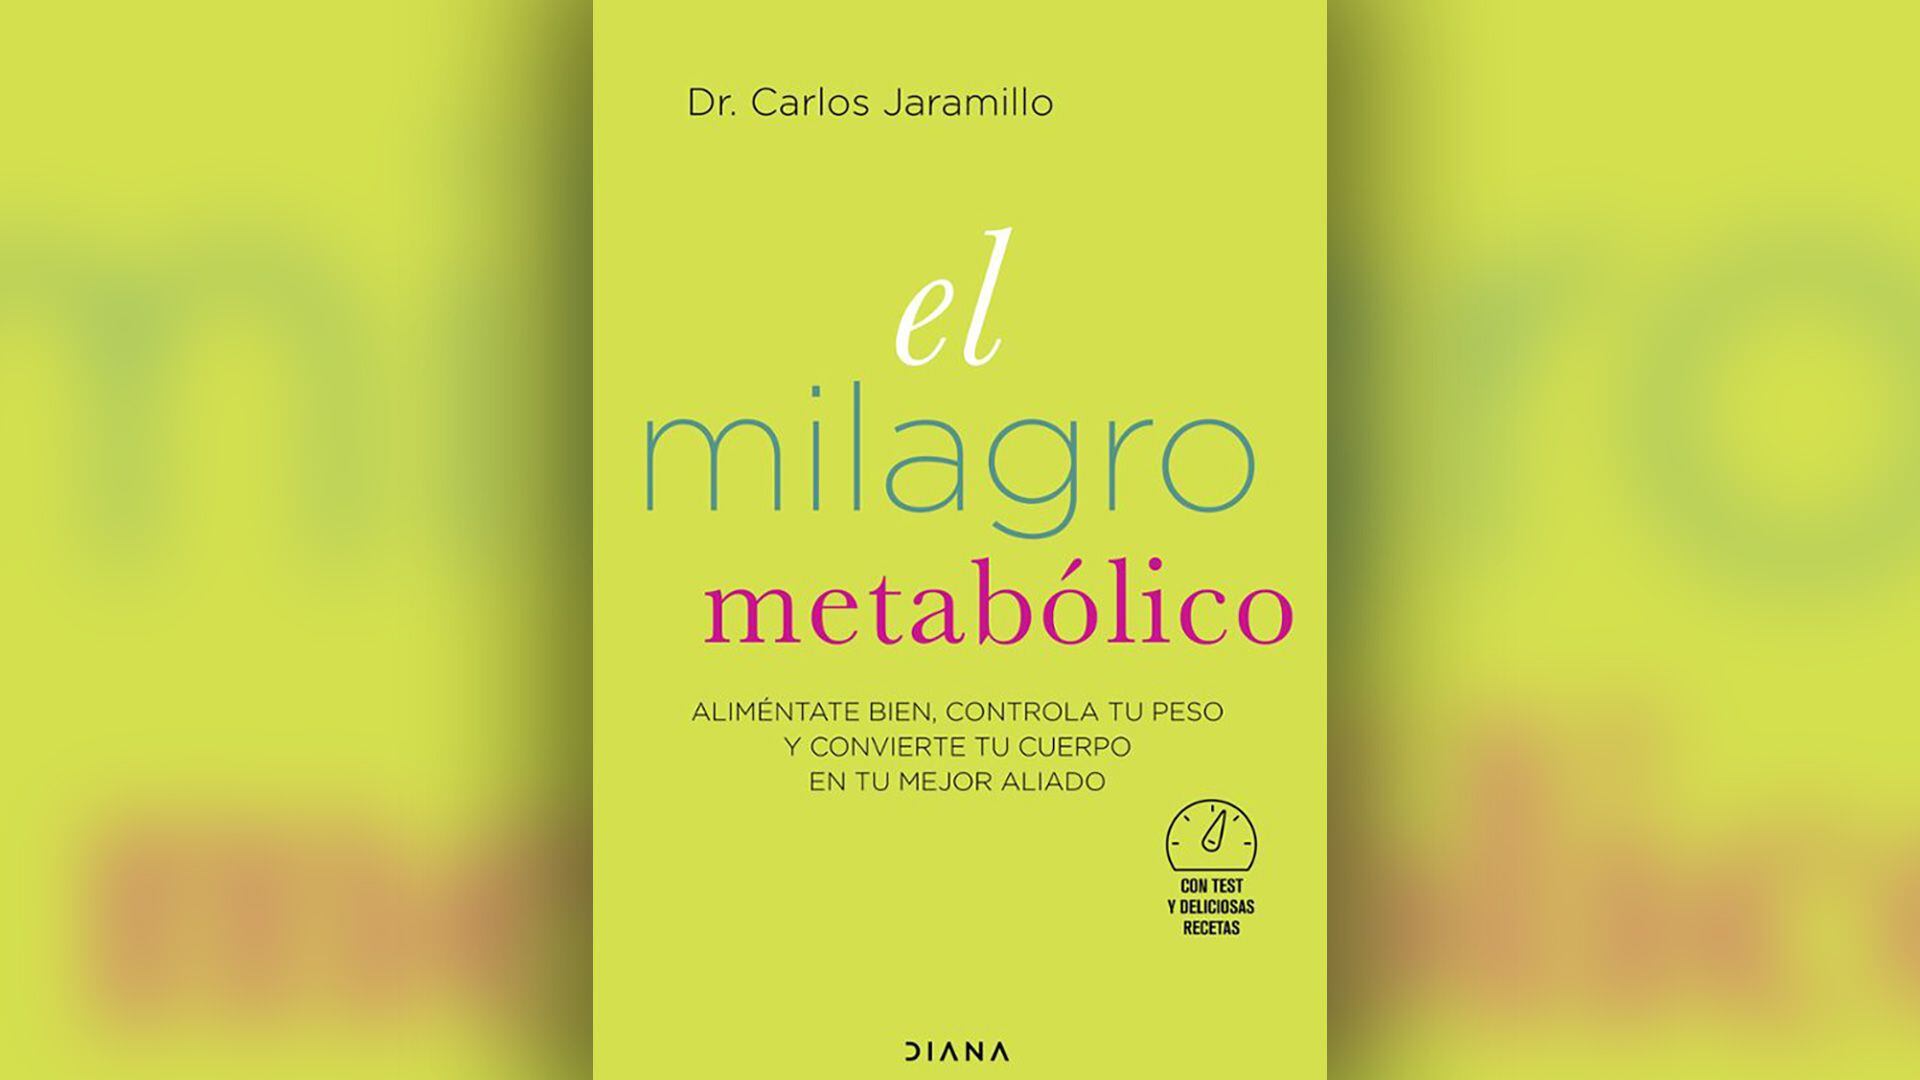 Portada del libro “El milagro metabólico” del Dr. Carlos Jaramillo